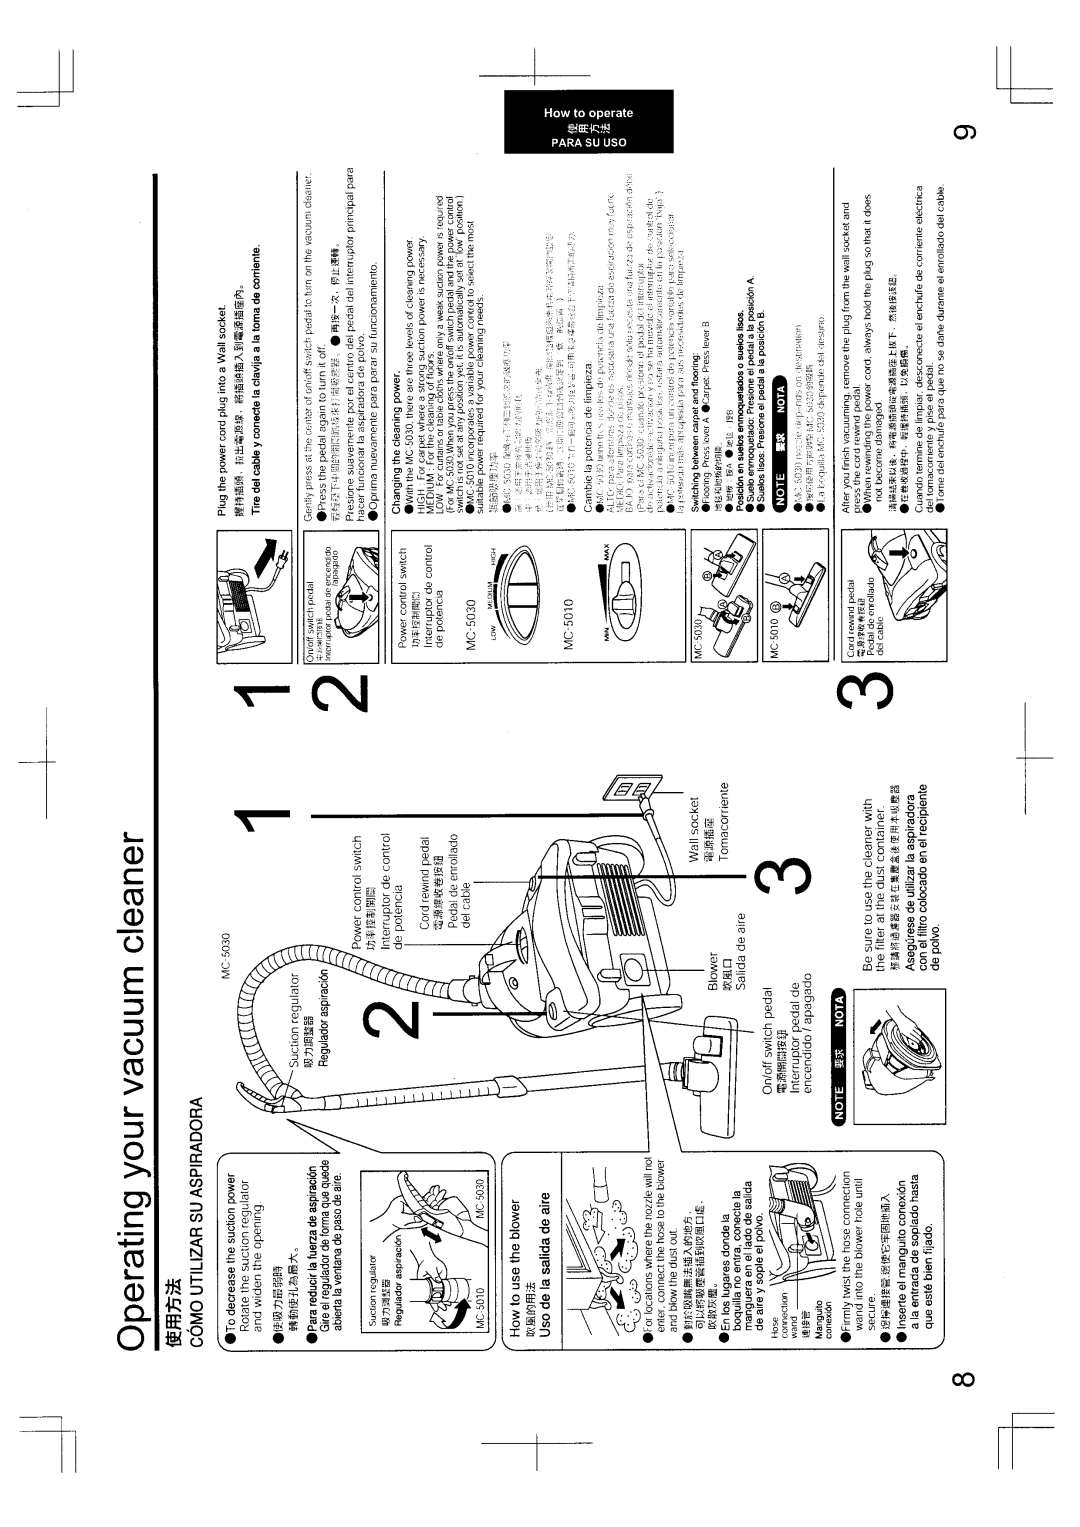 Panasonic MC-5010, MC-5030 manual 